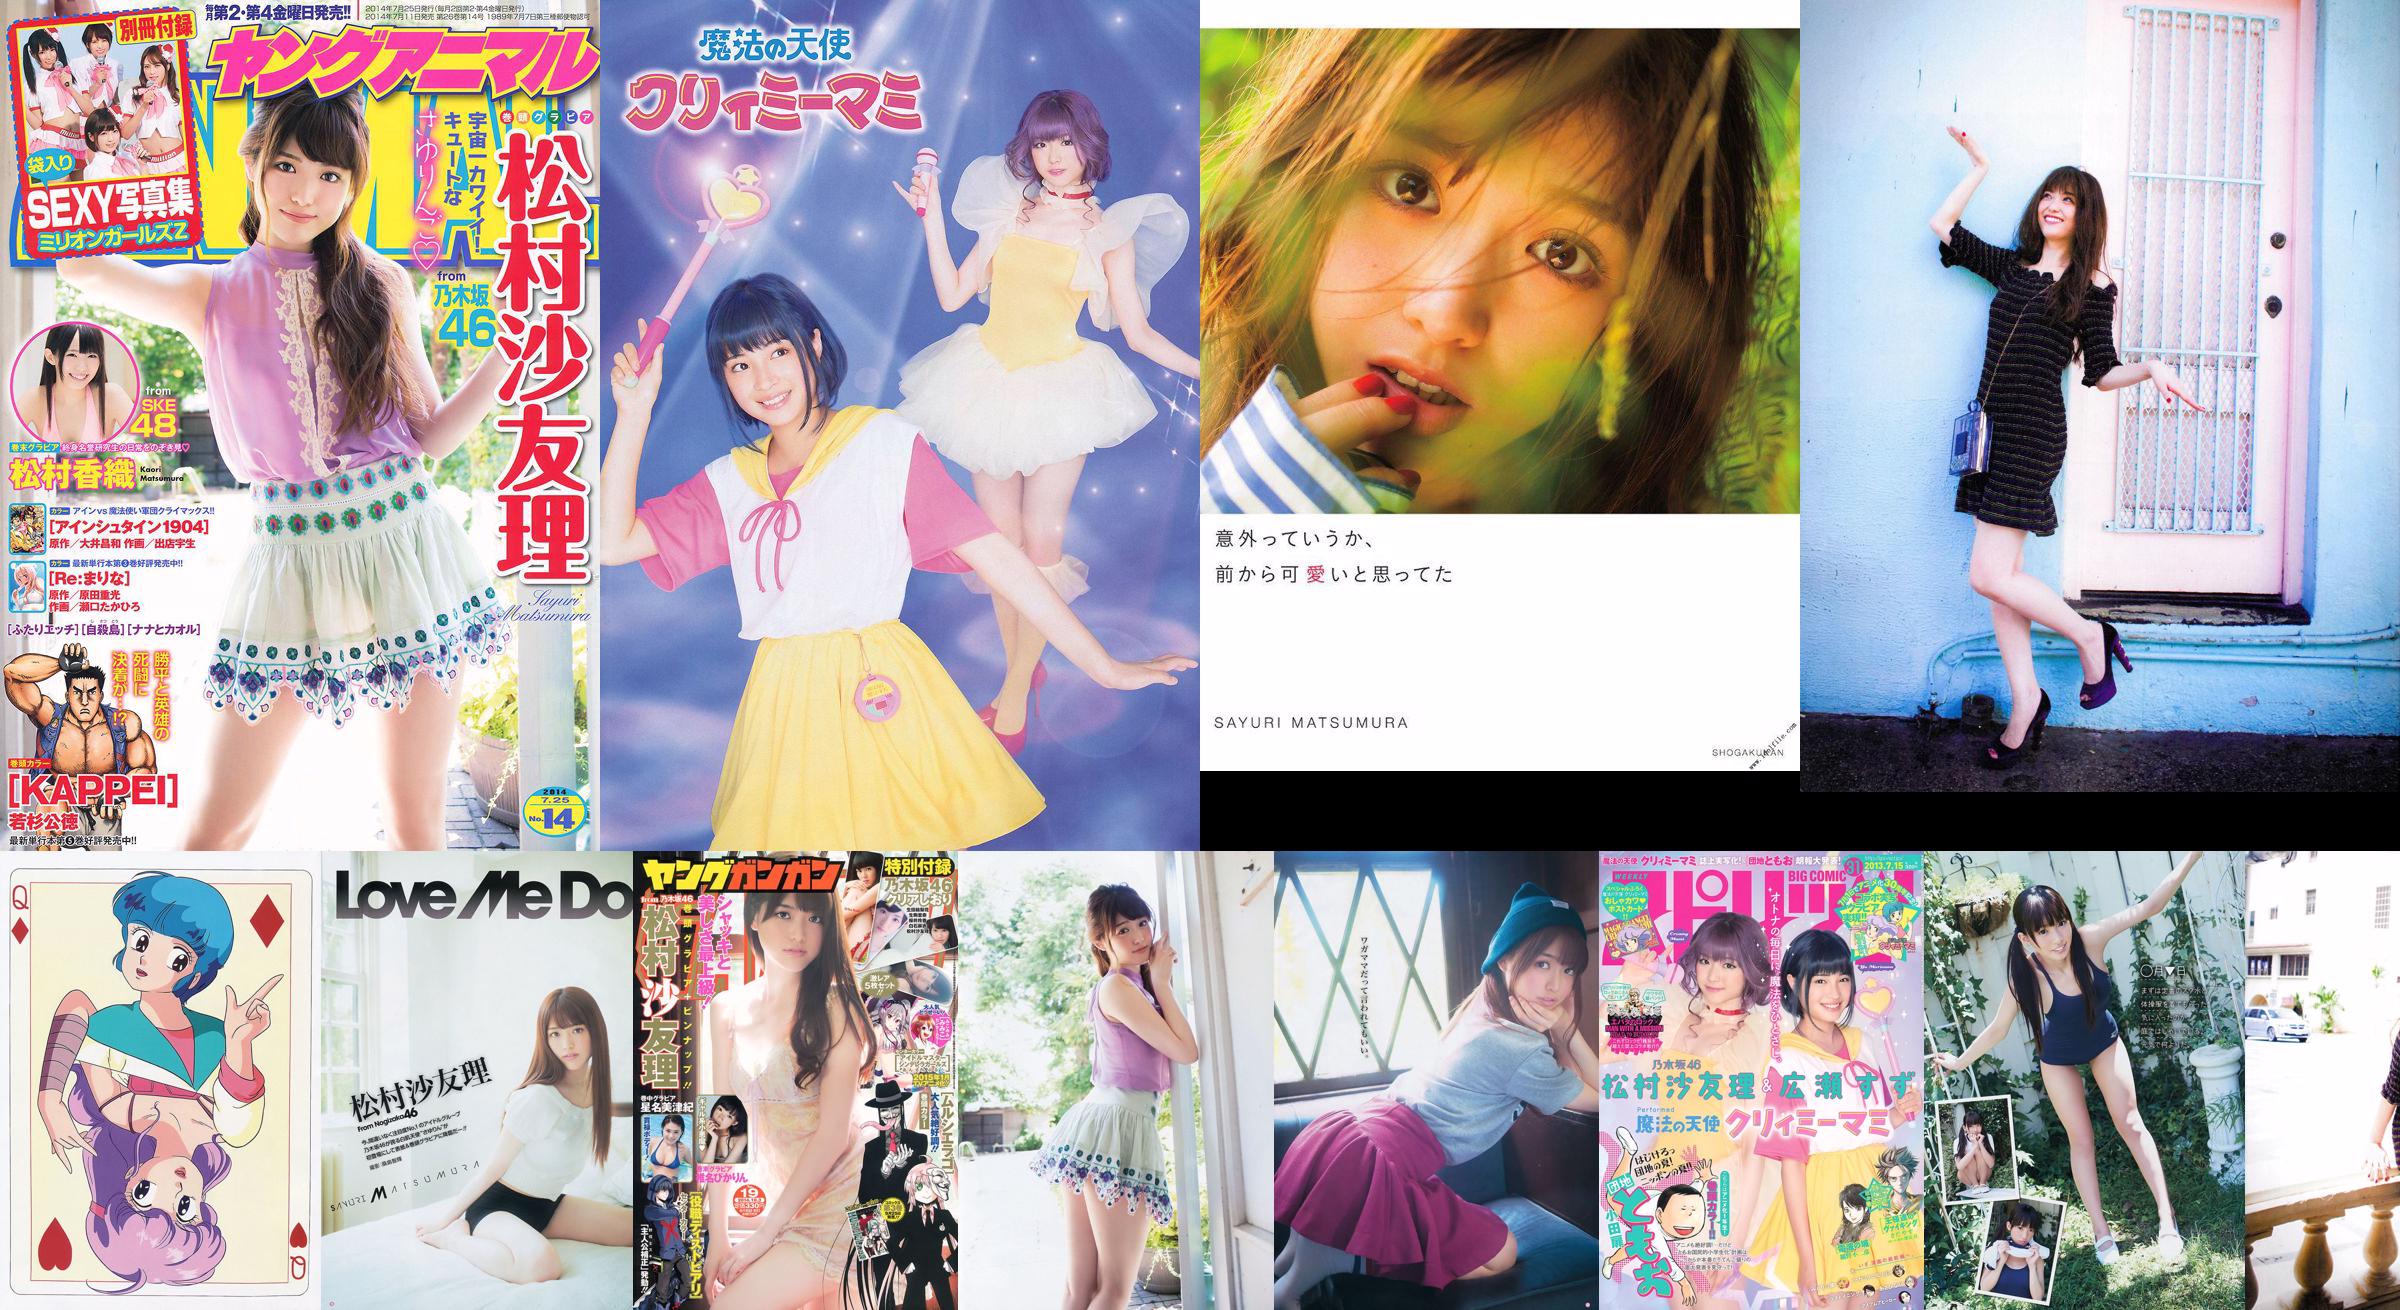 [Young Gangan] Sayuri Matsumura Hoshina Mizuki Shiina Pikarin Amaki juni 2014 No.19 foto No.6164de Pagina 11